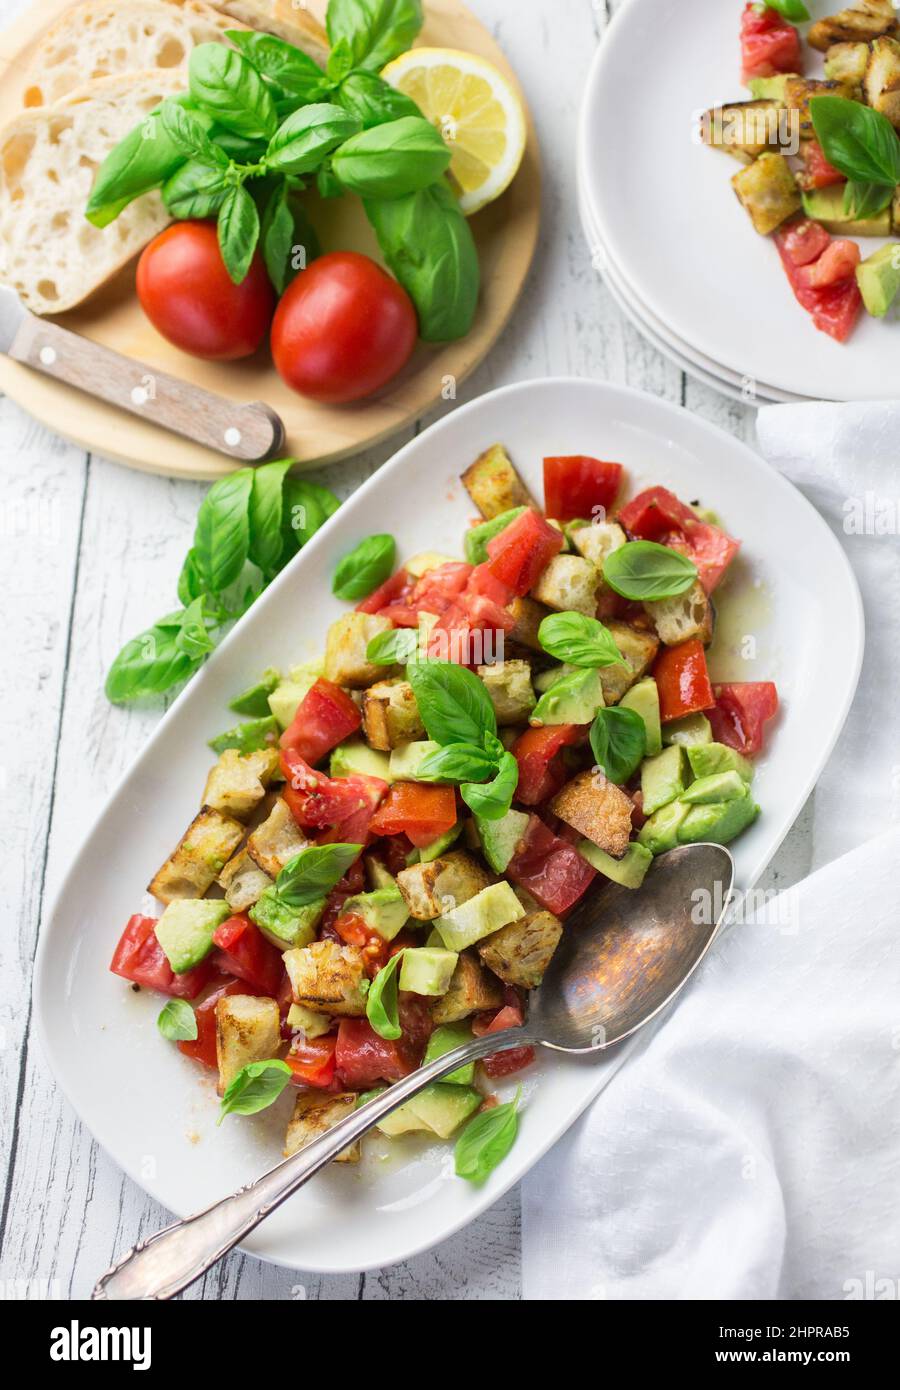 Ein großer weißer Teller voller italienischer Panzanella-Salat mit Tomaten, Brot, Avocado und Basilikum Stockfoto